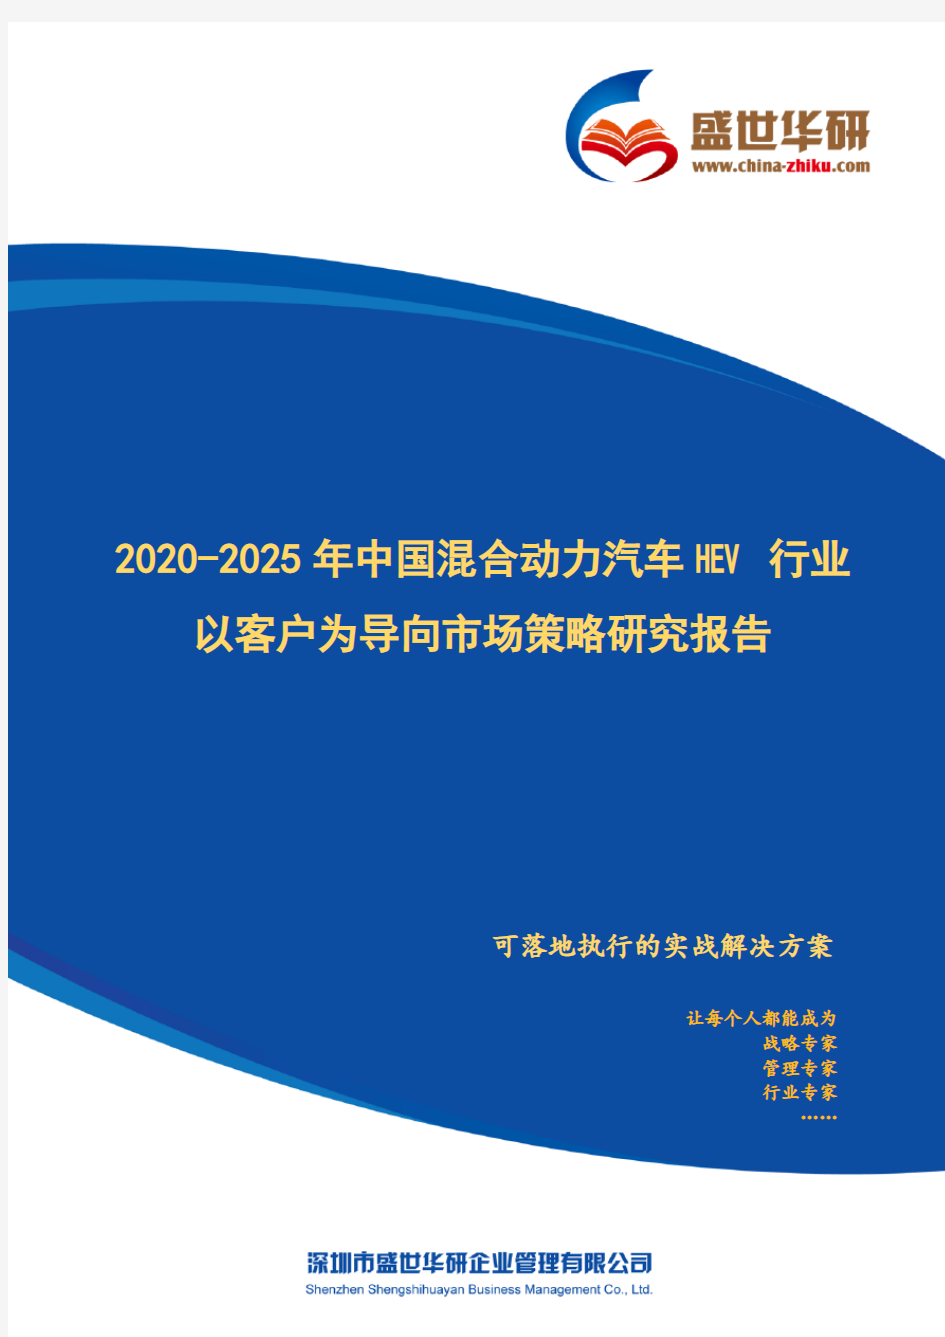 【完整版】2020-2025年中国混合动力汽车HEV行业以客户为导向市场策略研究报告